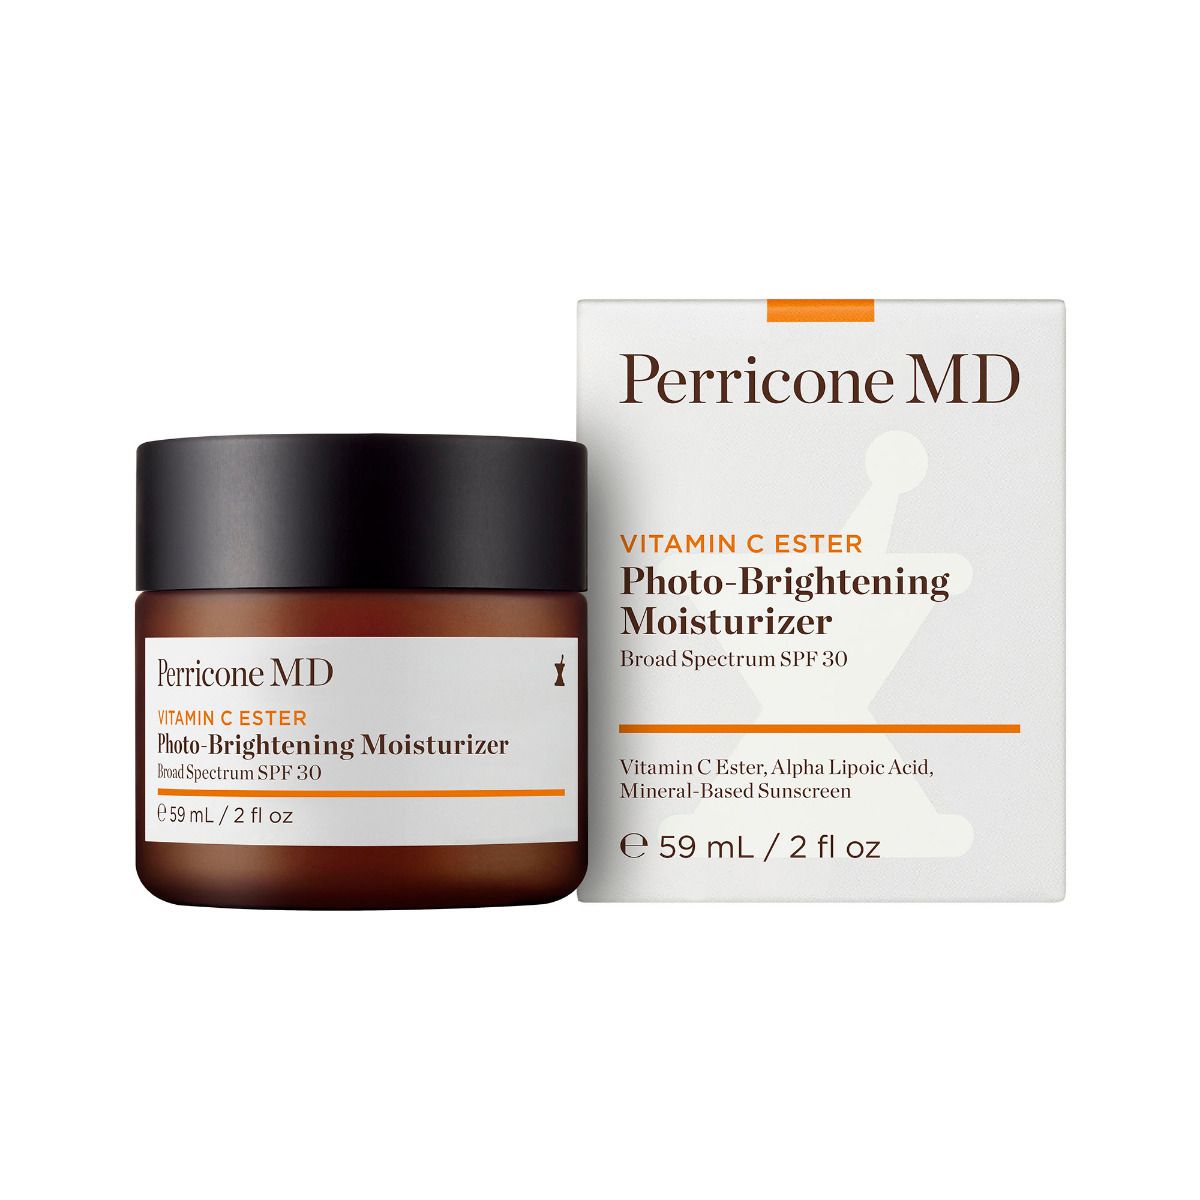 Perricone MD Vitamin C Ester Photo-Brightening Moisturizer 2oz